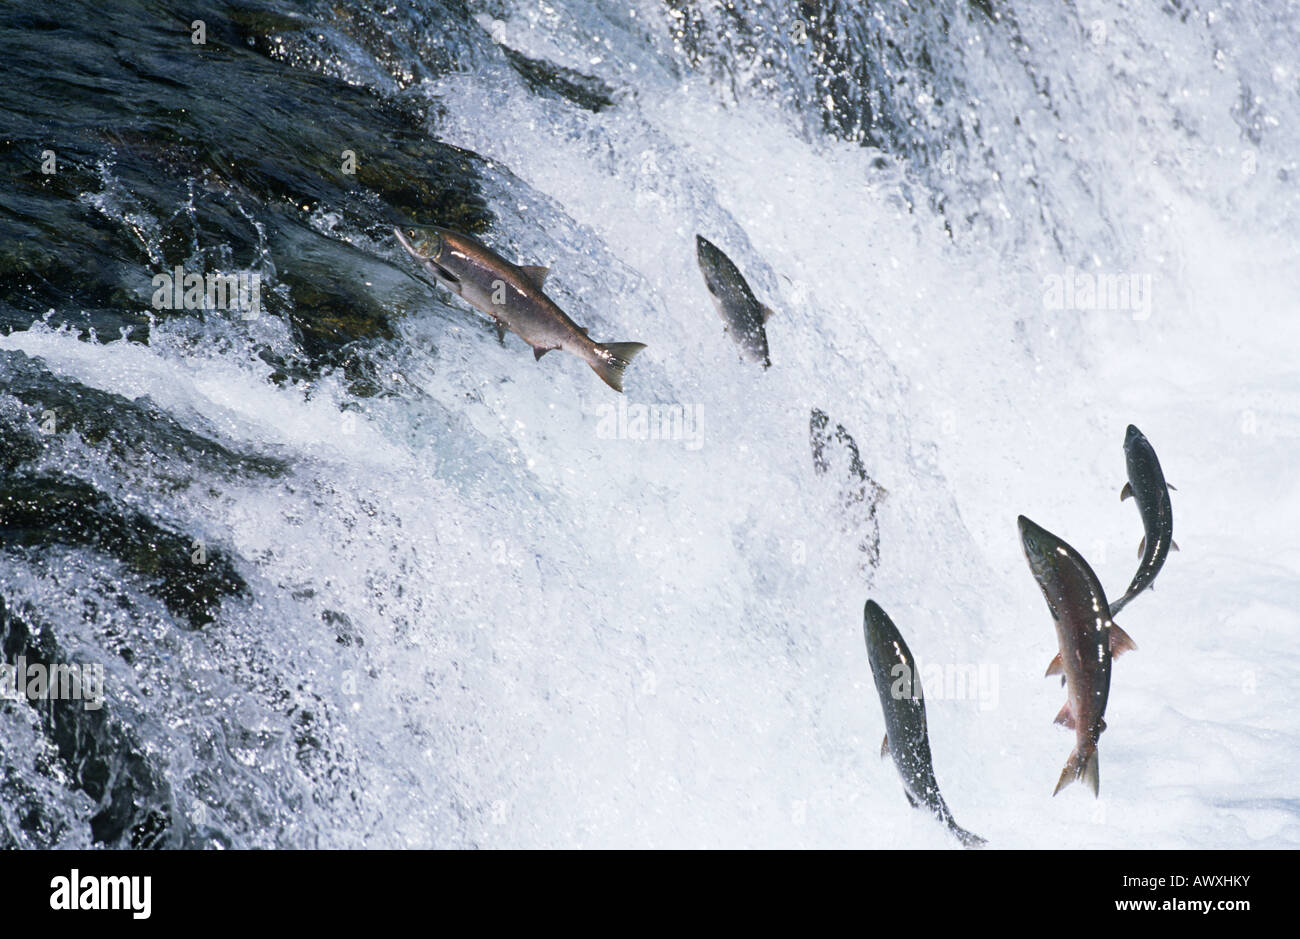 Groupe de saut du saumon en rivière en amont Banque D'Images